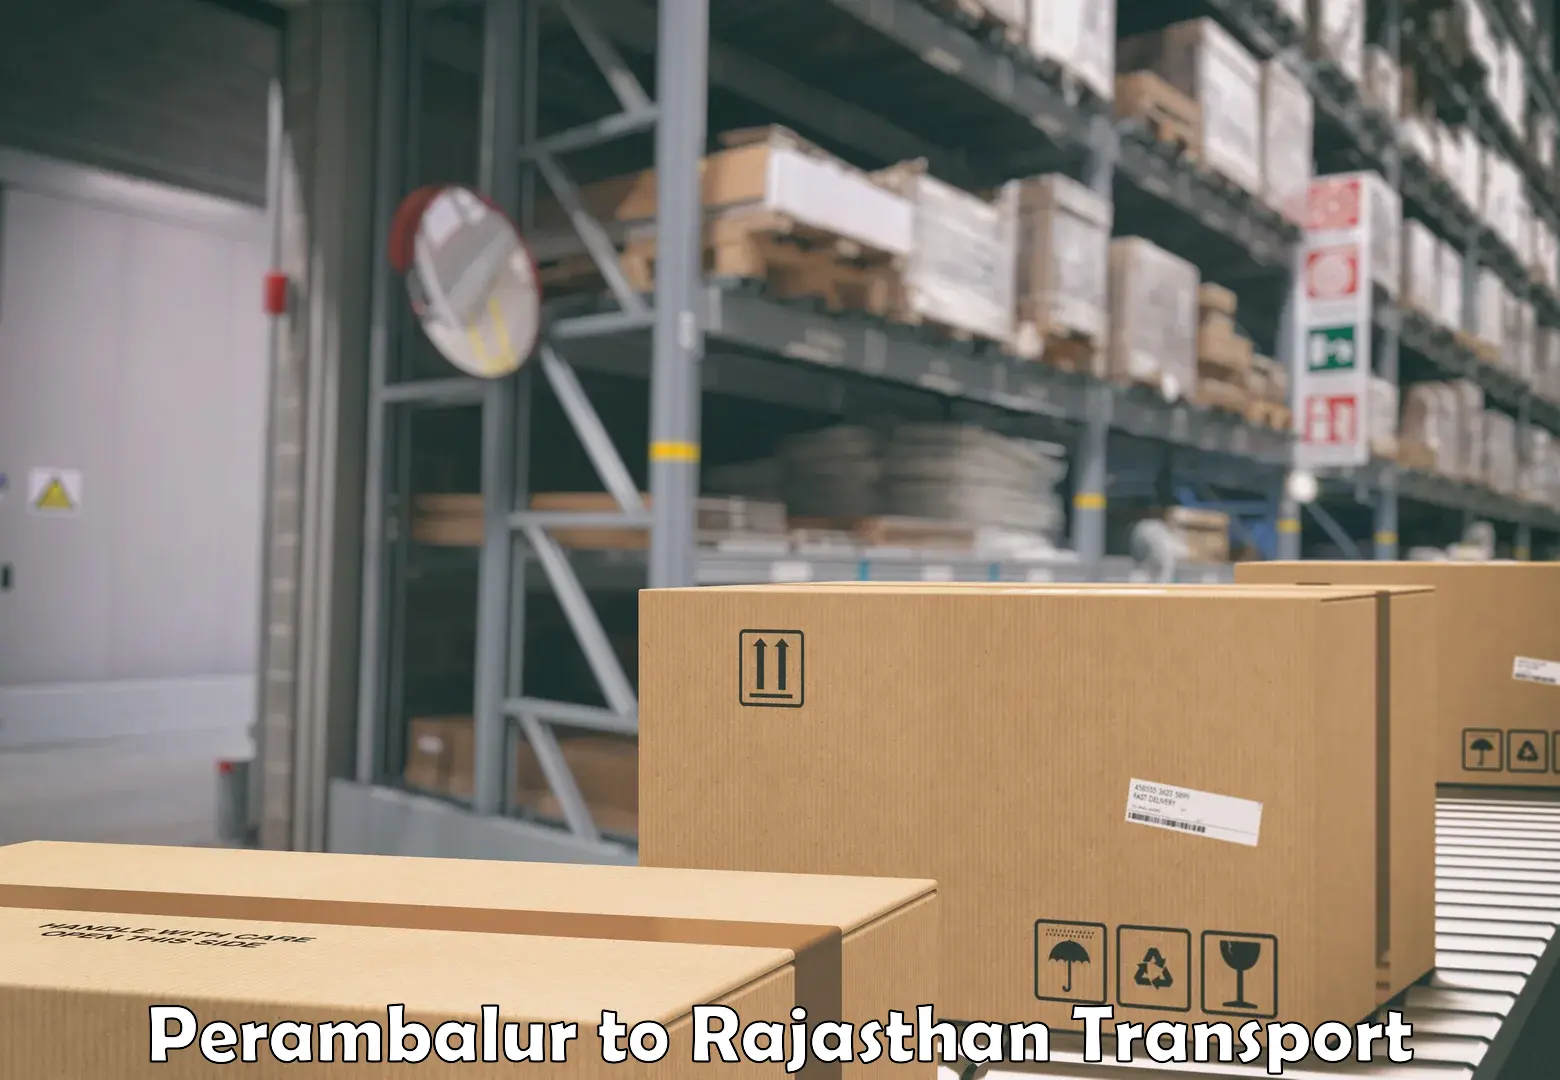 Shipping partner Perambalur to Viratnagar